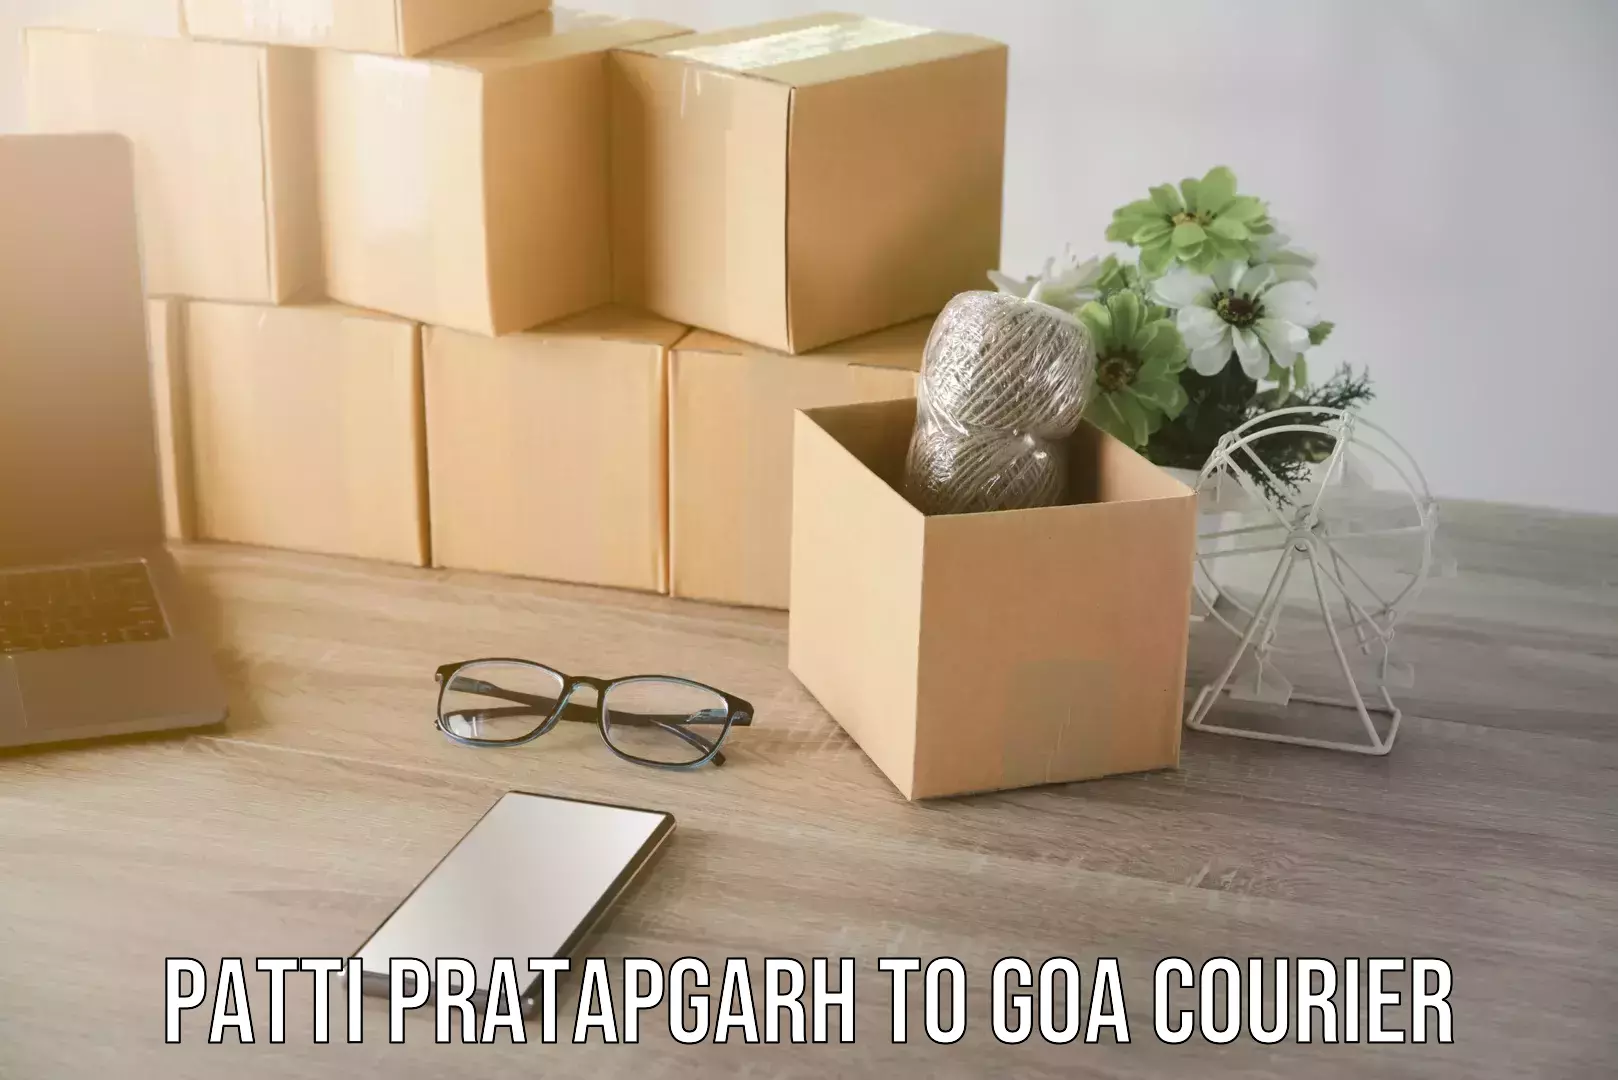 Full-service furniture transport Patti Pratapgarh to Goa